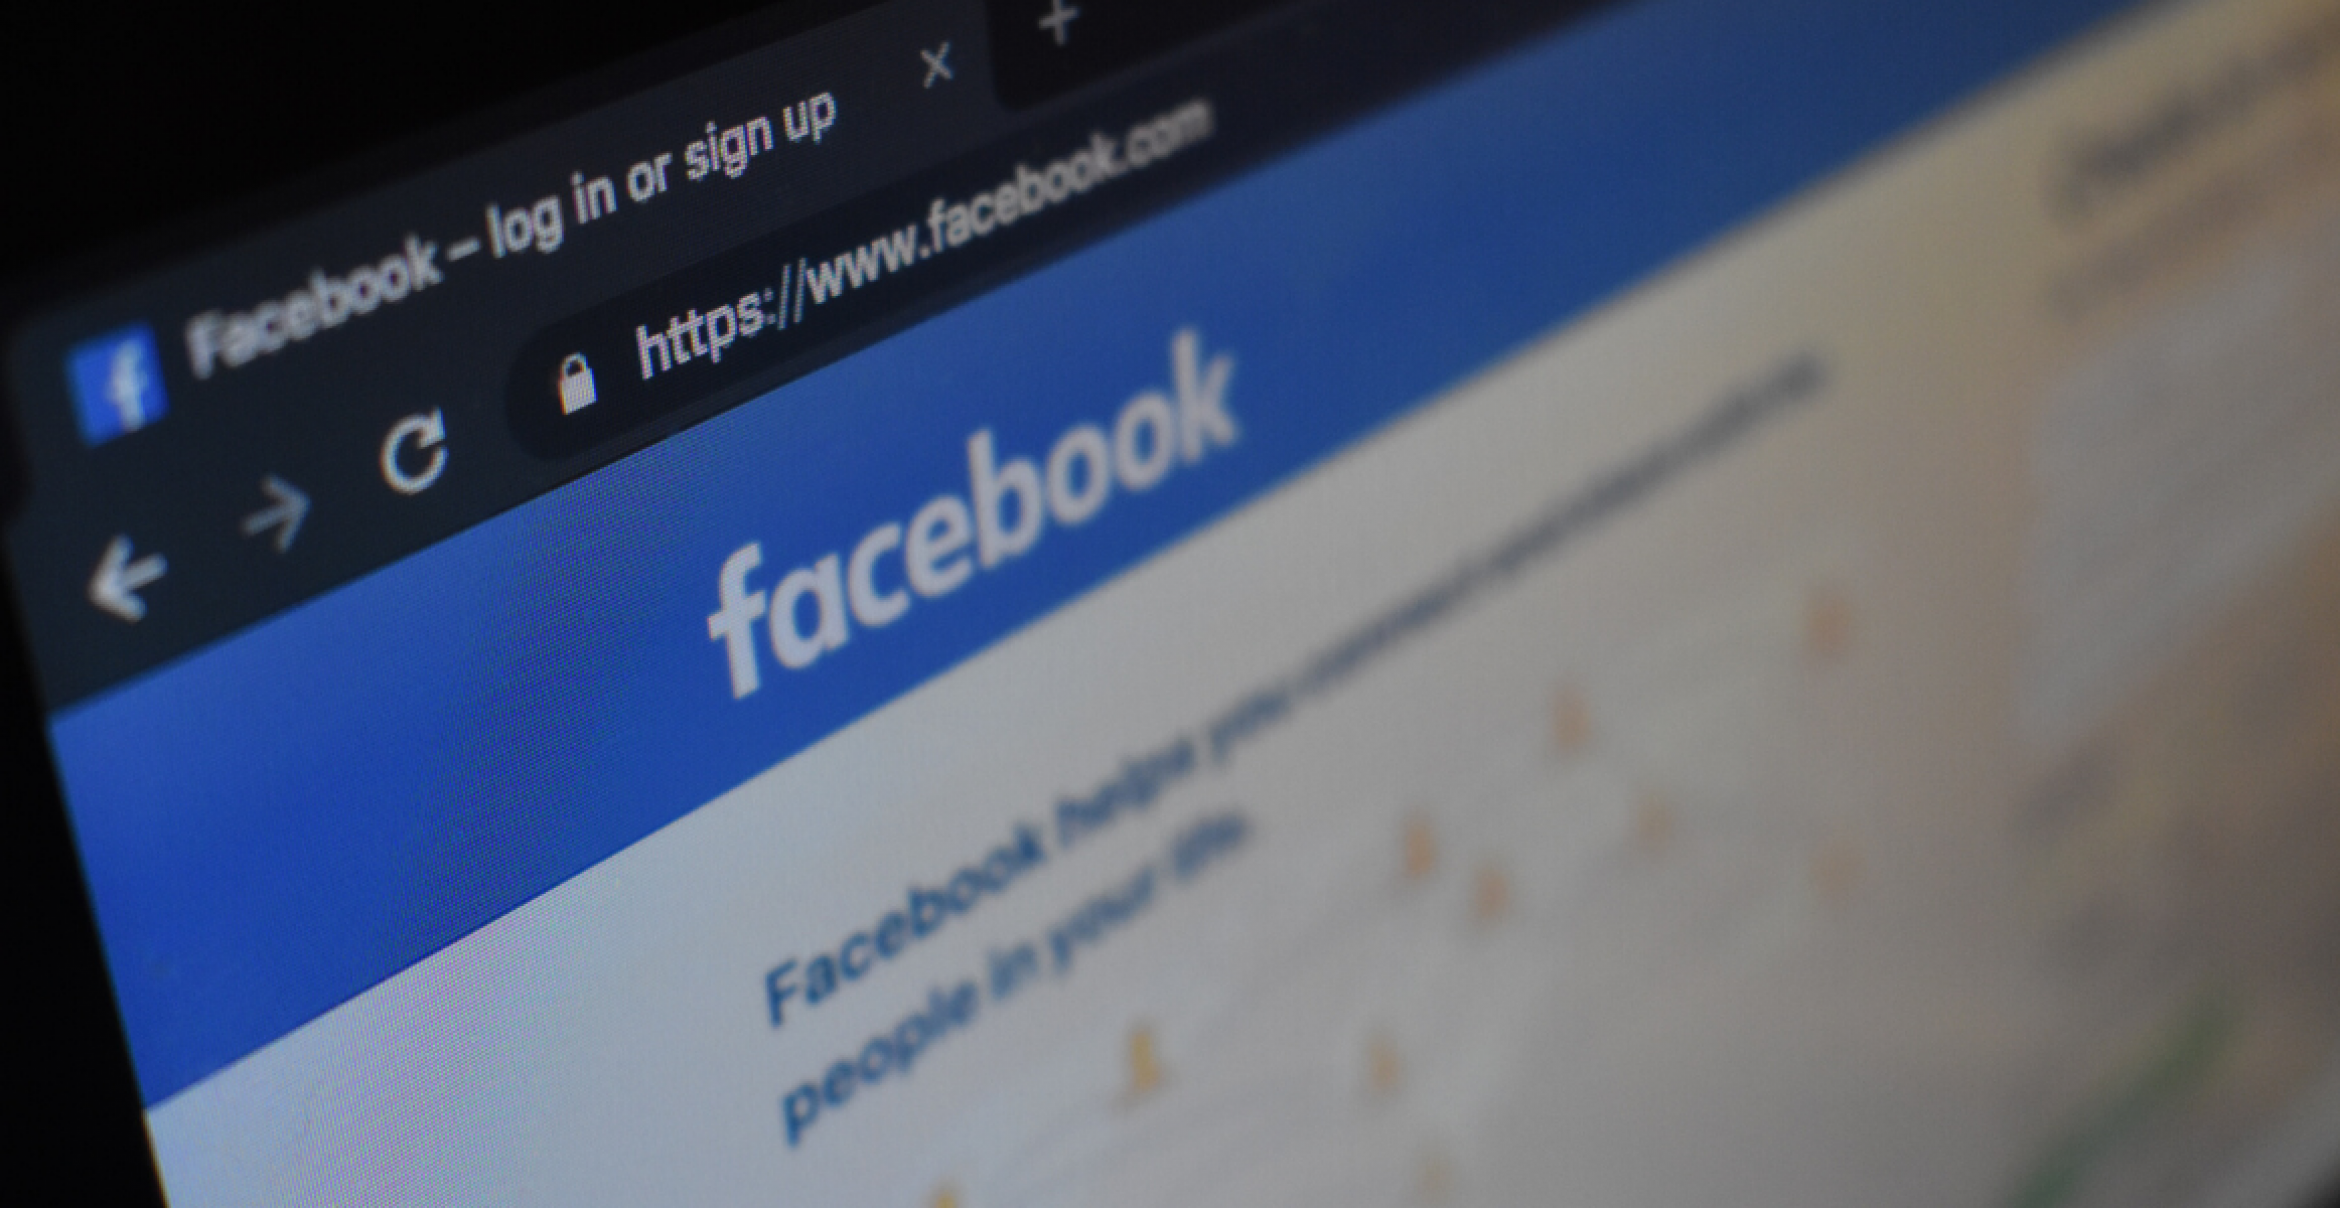 Facebook soll an einer Facebook-Simulation bauen, die nur mit Bots bevölkert wird